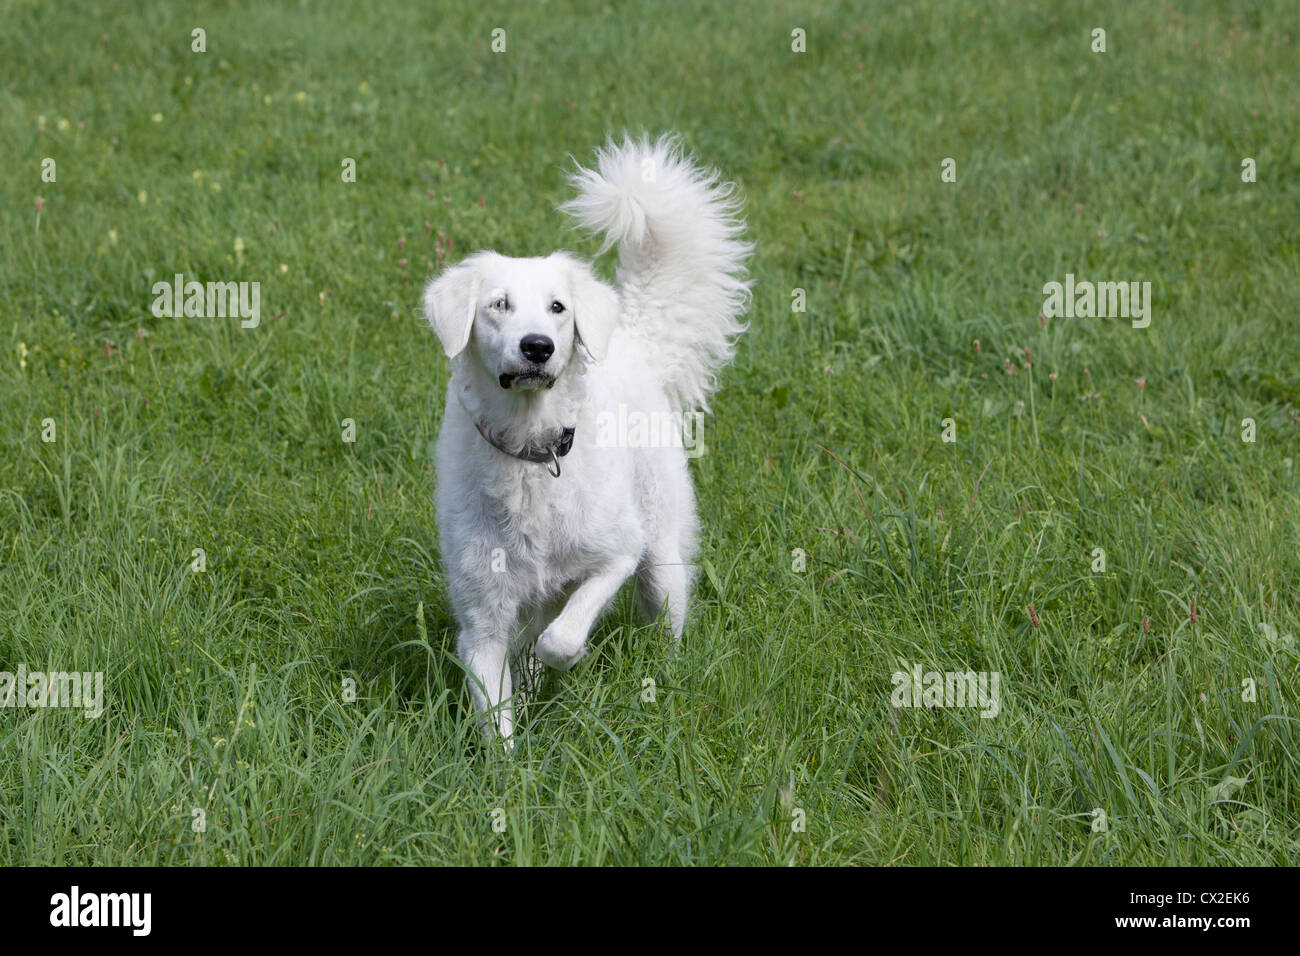 Kuvacz Hund Welpen puppies dog white sitting sitzend Wiese grün green grass aufmerksam attentively Stock Photo